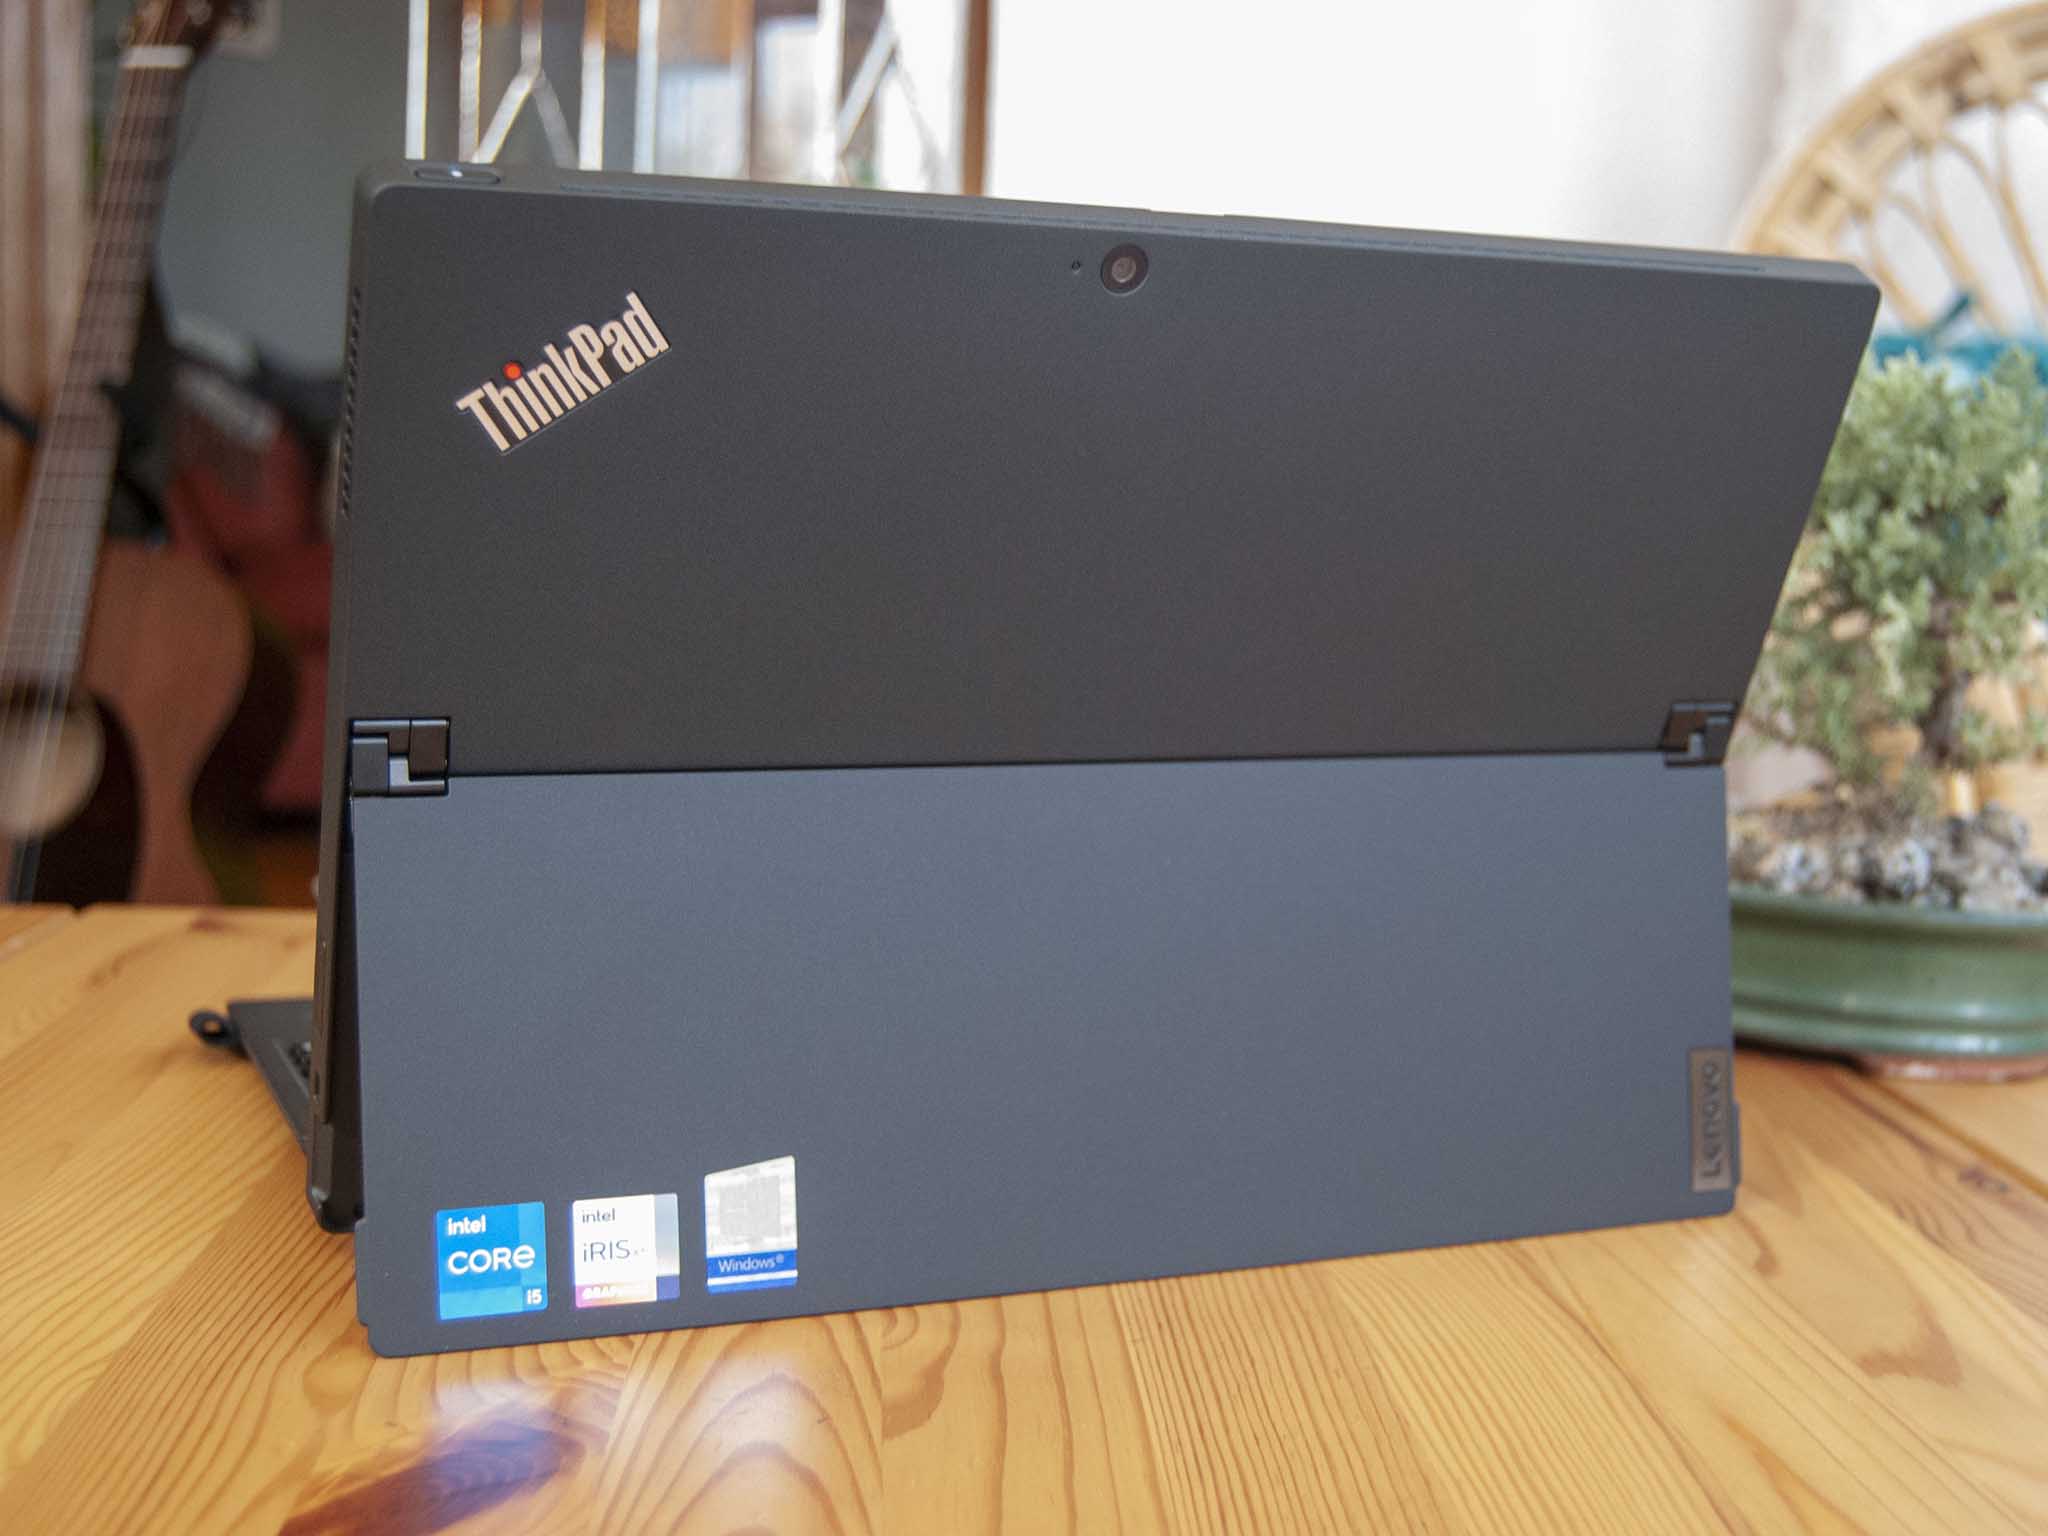 Lenovo Thinkpad X12 Detachable Review